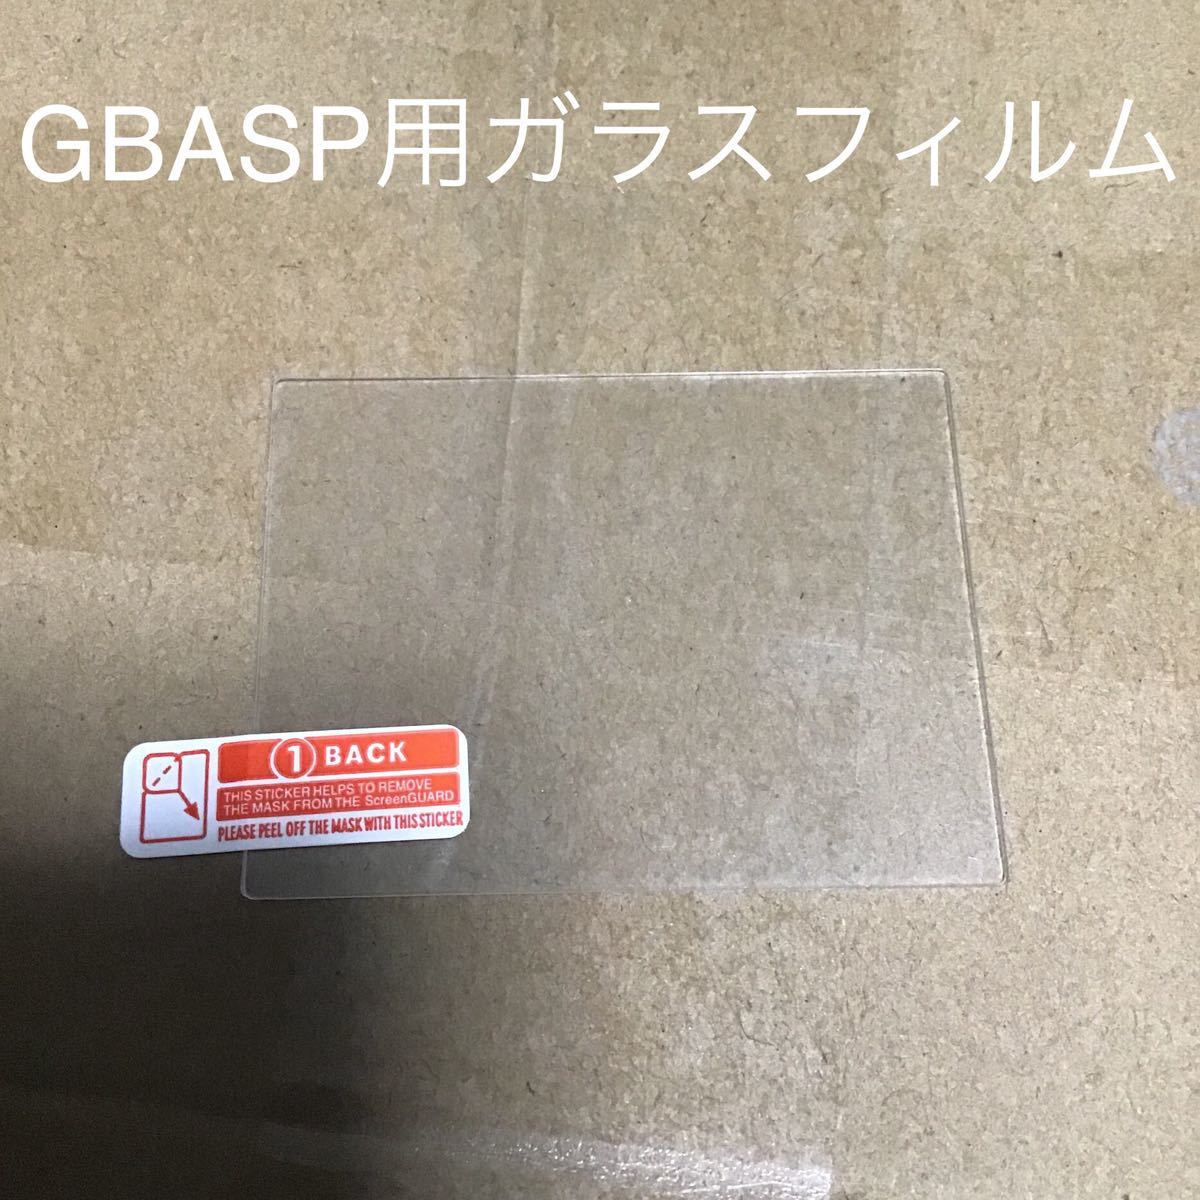 ゲームボーイアドバンスSP用液晶保護ガラスフィルム